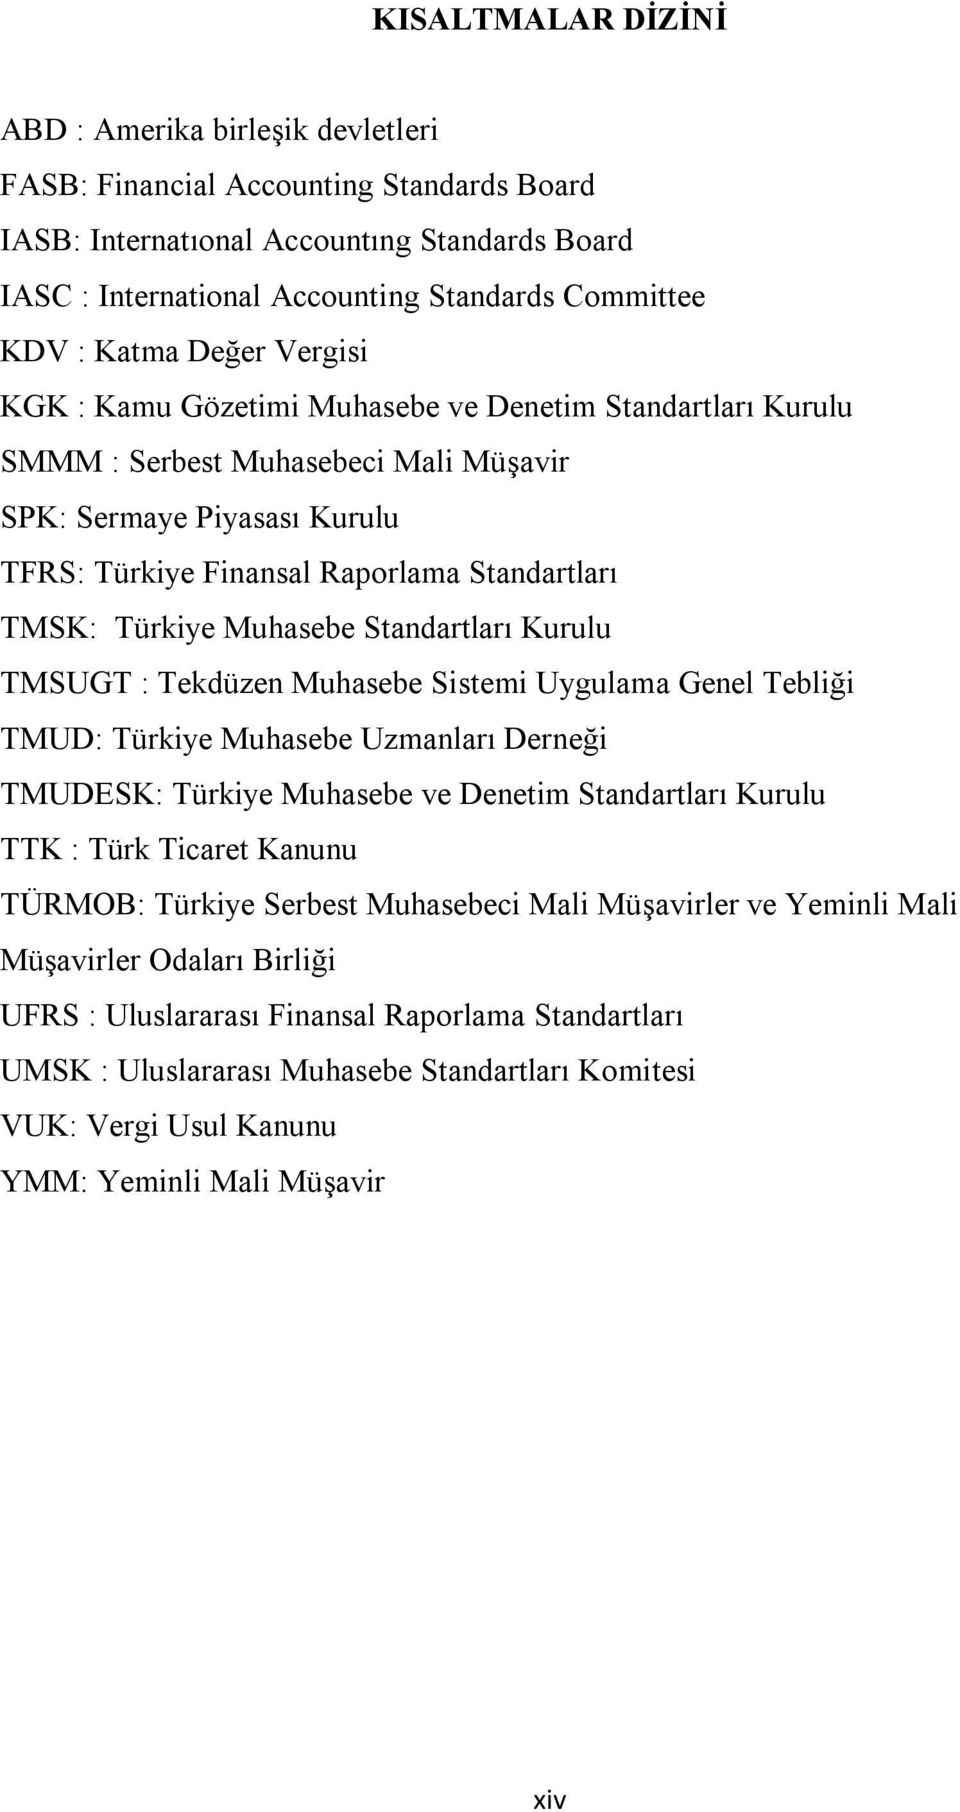 TMSK: Türkiye Muhasebe Standartları Kurulu TMSUGT : Tekdüzen Muhasebe Sistemi Uygulama Genel Tebliği TMUD: Türkiye Muhasebe Uzmanları Derneği TMUDESK: Türkiye Muhasebe ve Denetim Standartları Kurulu